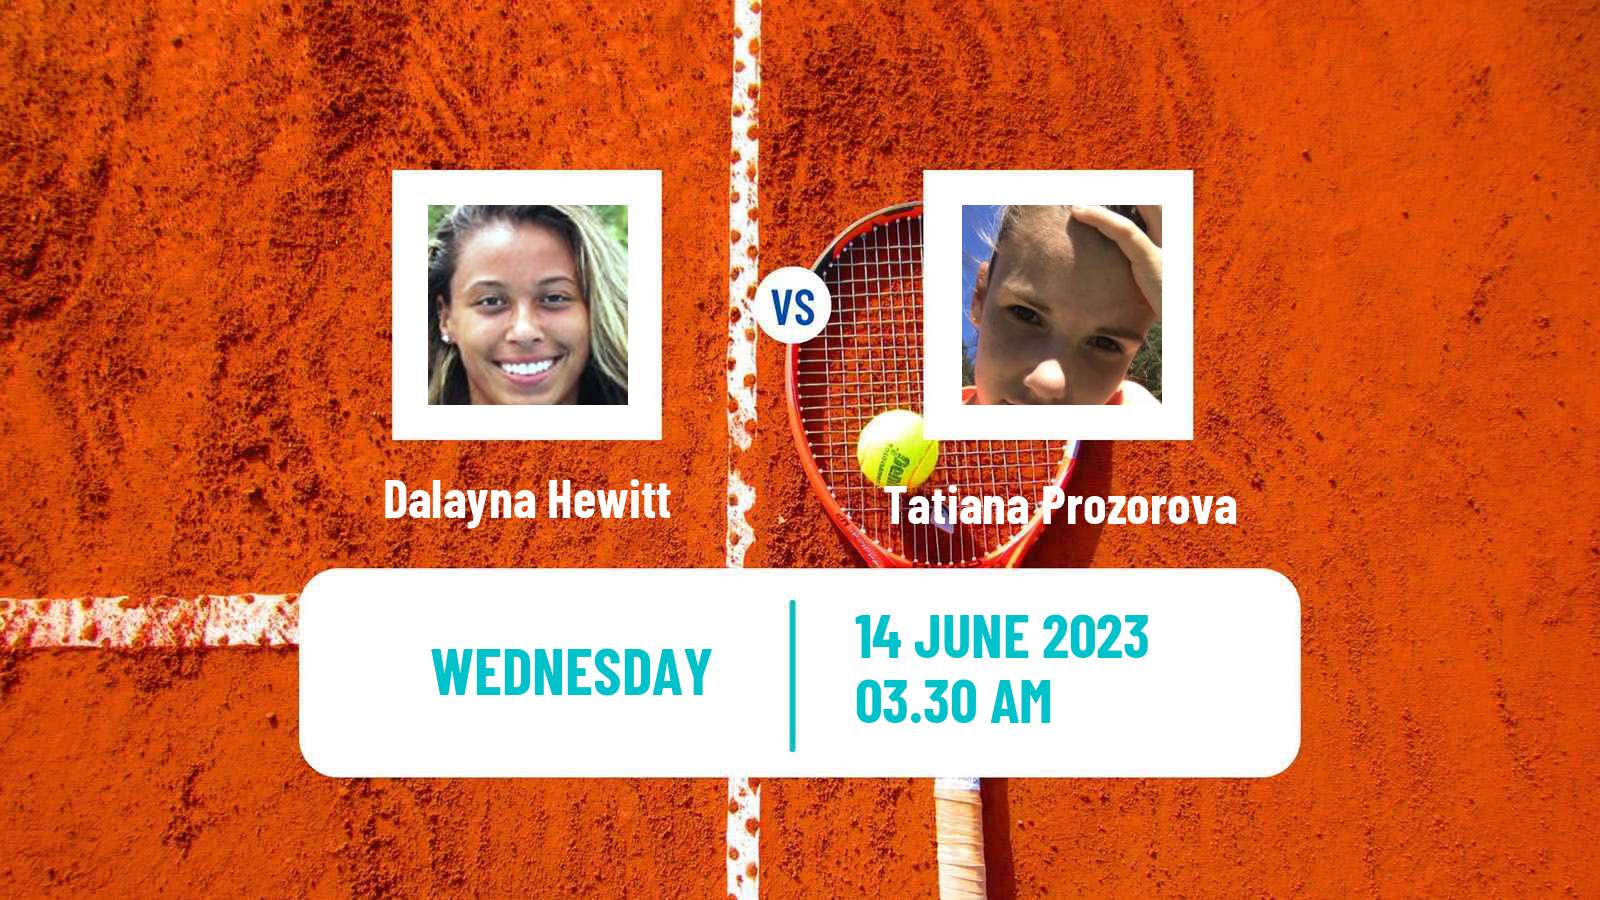 Tennis ITF W60 Madrid Women Dalayna Hewitt - Tatiana Prozorova